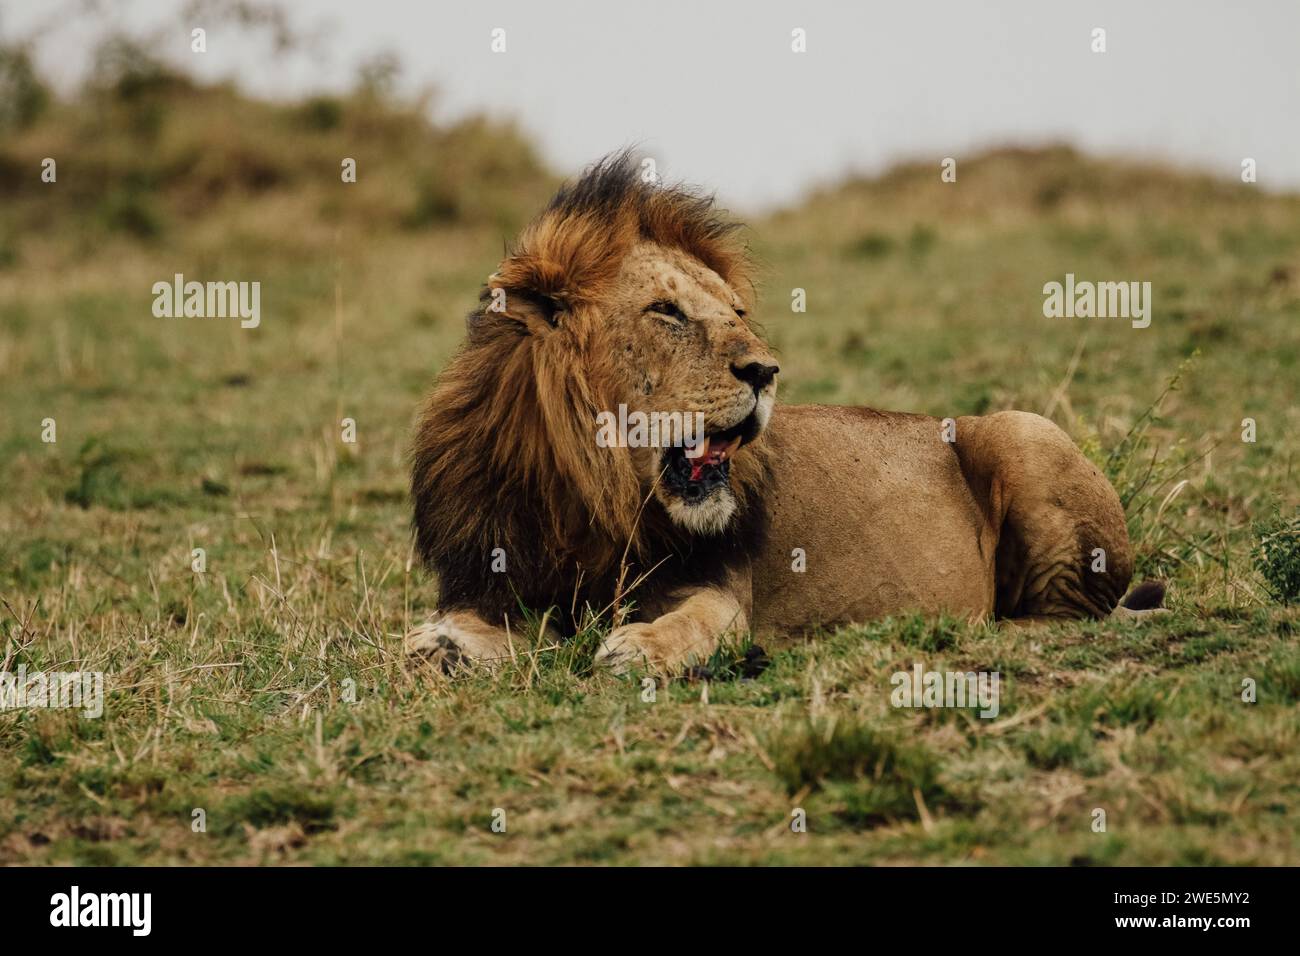 Un lion reposant sur l'herbe, bouche grande ouverte. Banque D'Images